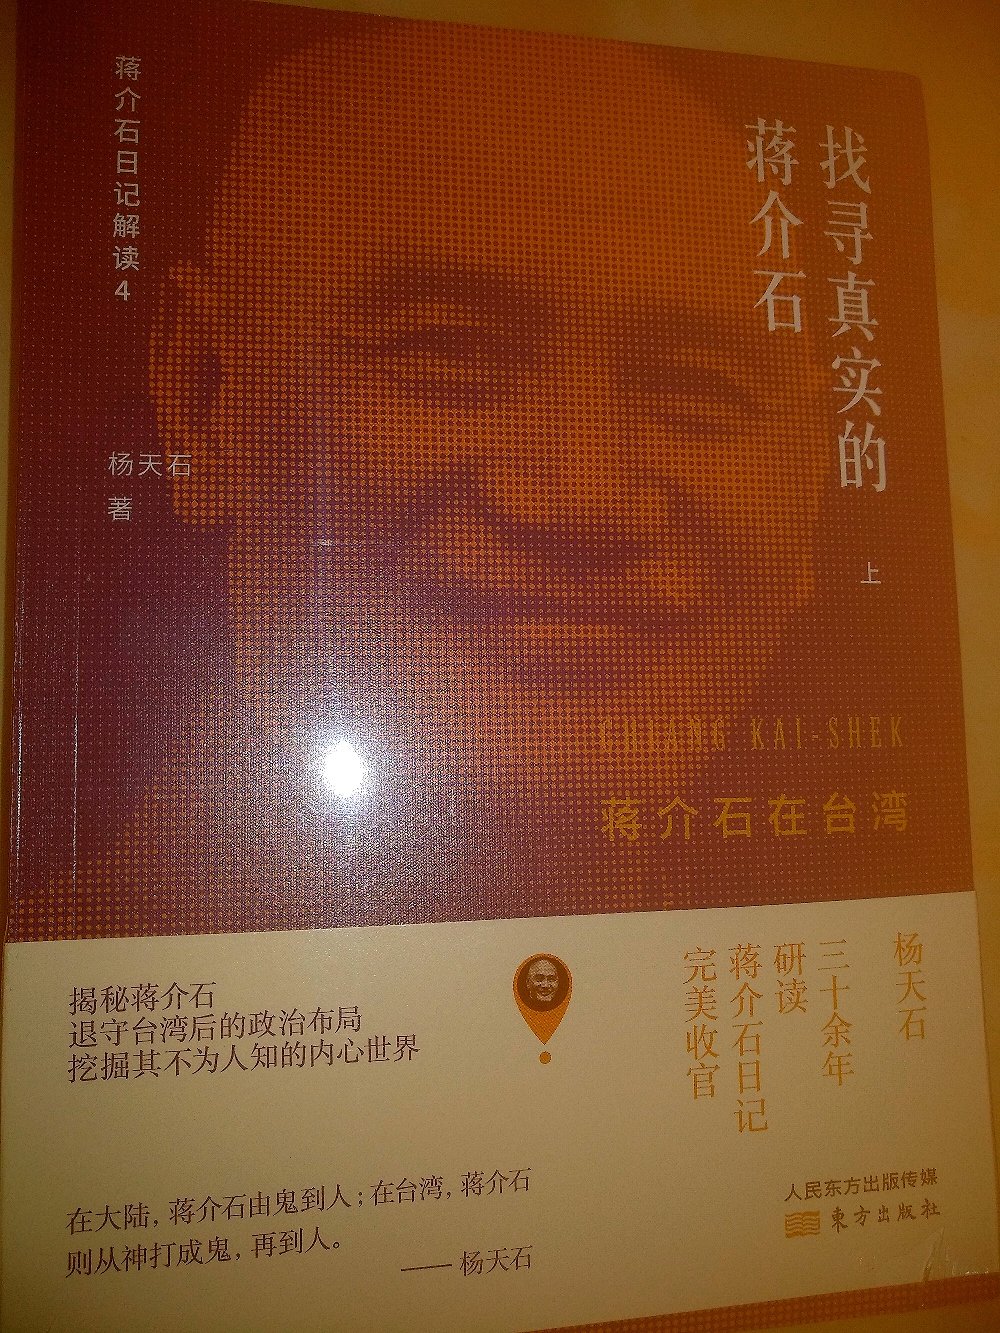 很好的书，枭雄蒋介石在**的起落跌伏的细节不为人知，今特买之。